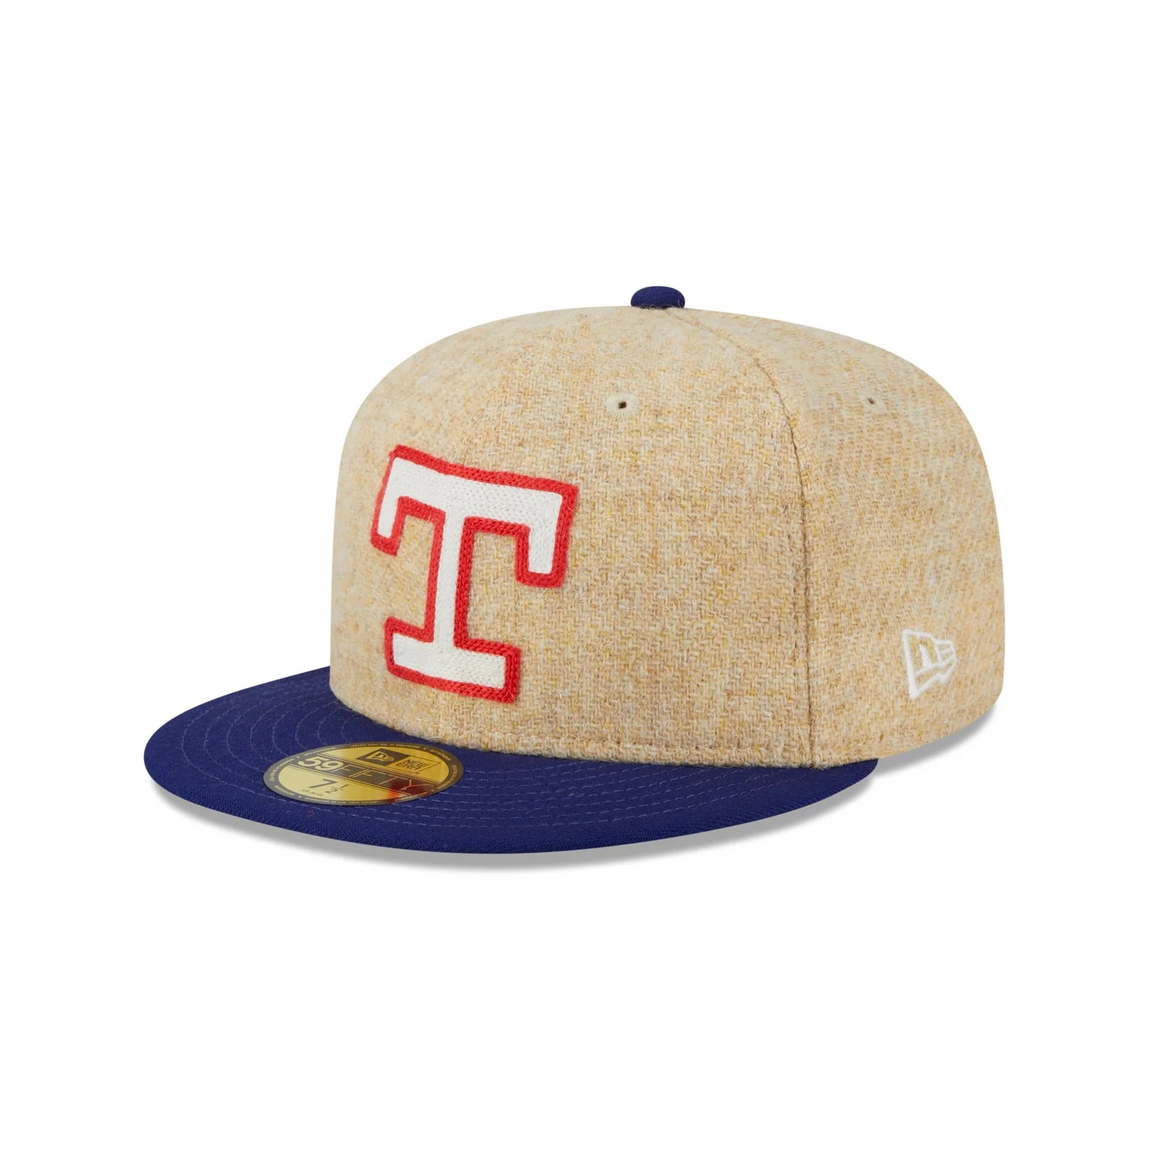 New Era 59FIFTY Texas Rangers Harris Tweed Fitted Hat (Khaki/Red-Blue) - New Era 59FIFTY Texas Rangers Harris Tweed Fitted Hat (Khaki/Red-Blue) - 